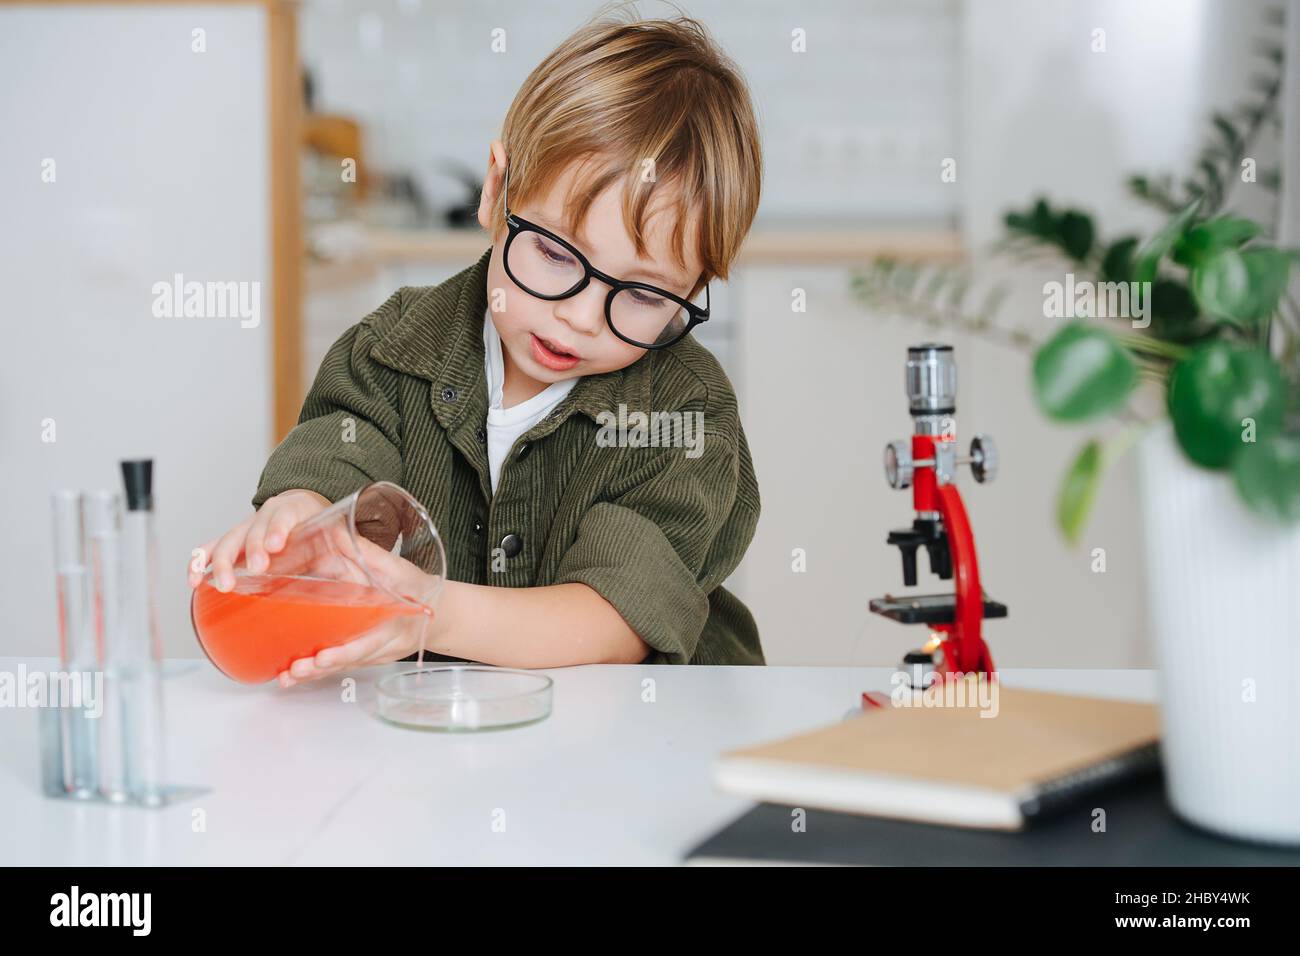 Netter kleiner Junge, der ein Wissenschaftsprojekt macht und eine chemische Glasschale aus einem Becher füllt Stockfoto